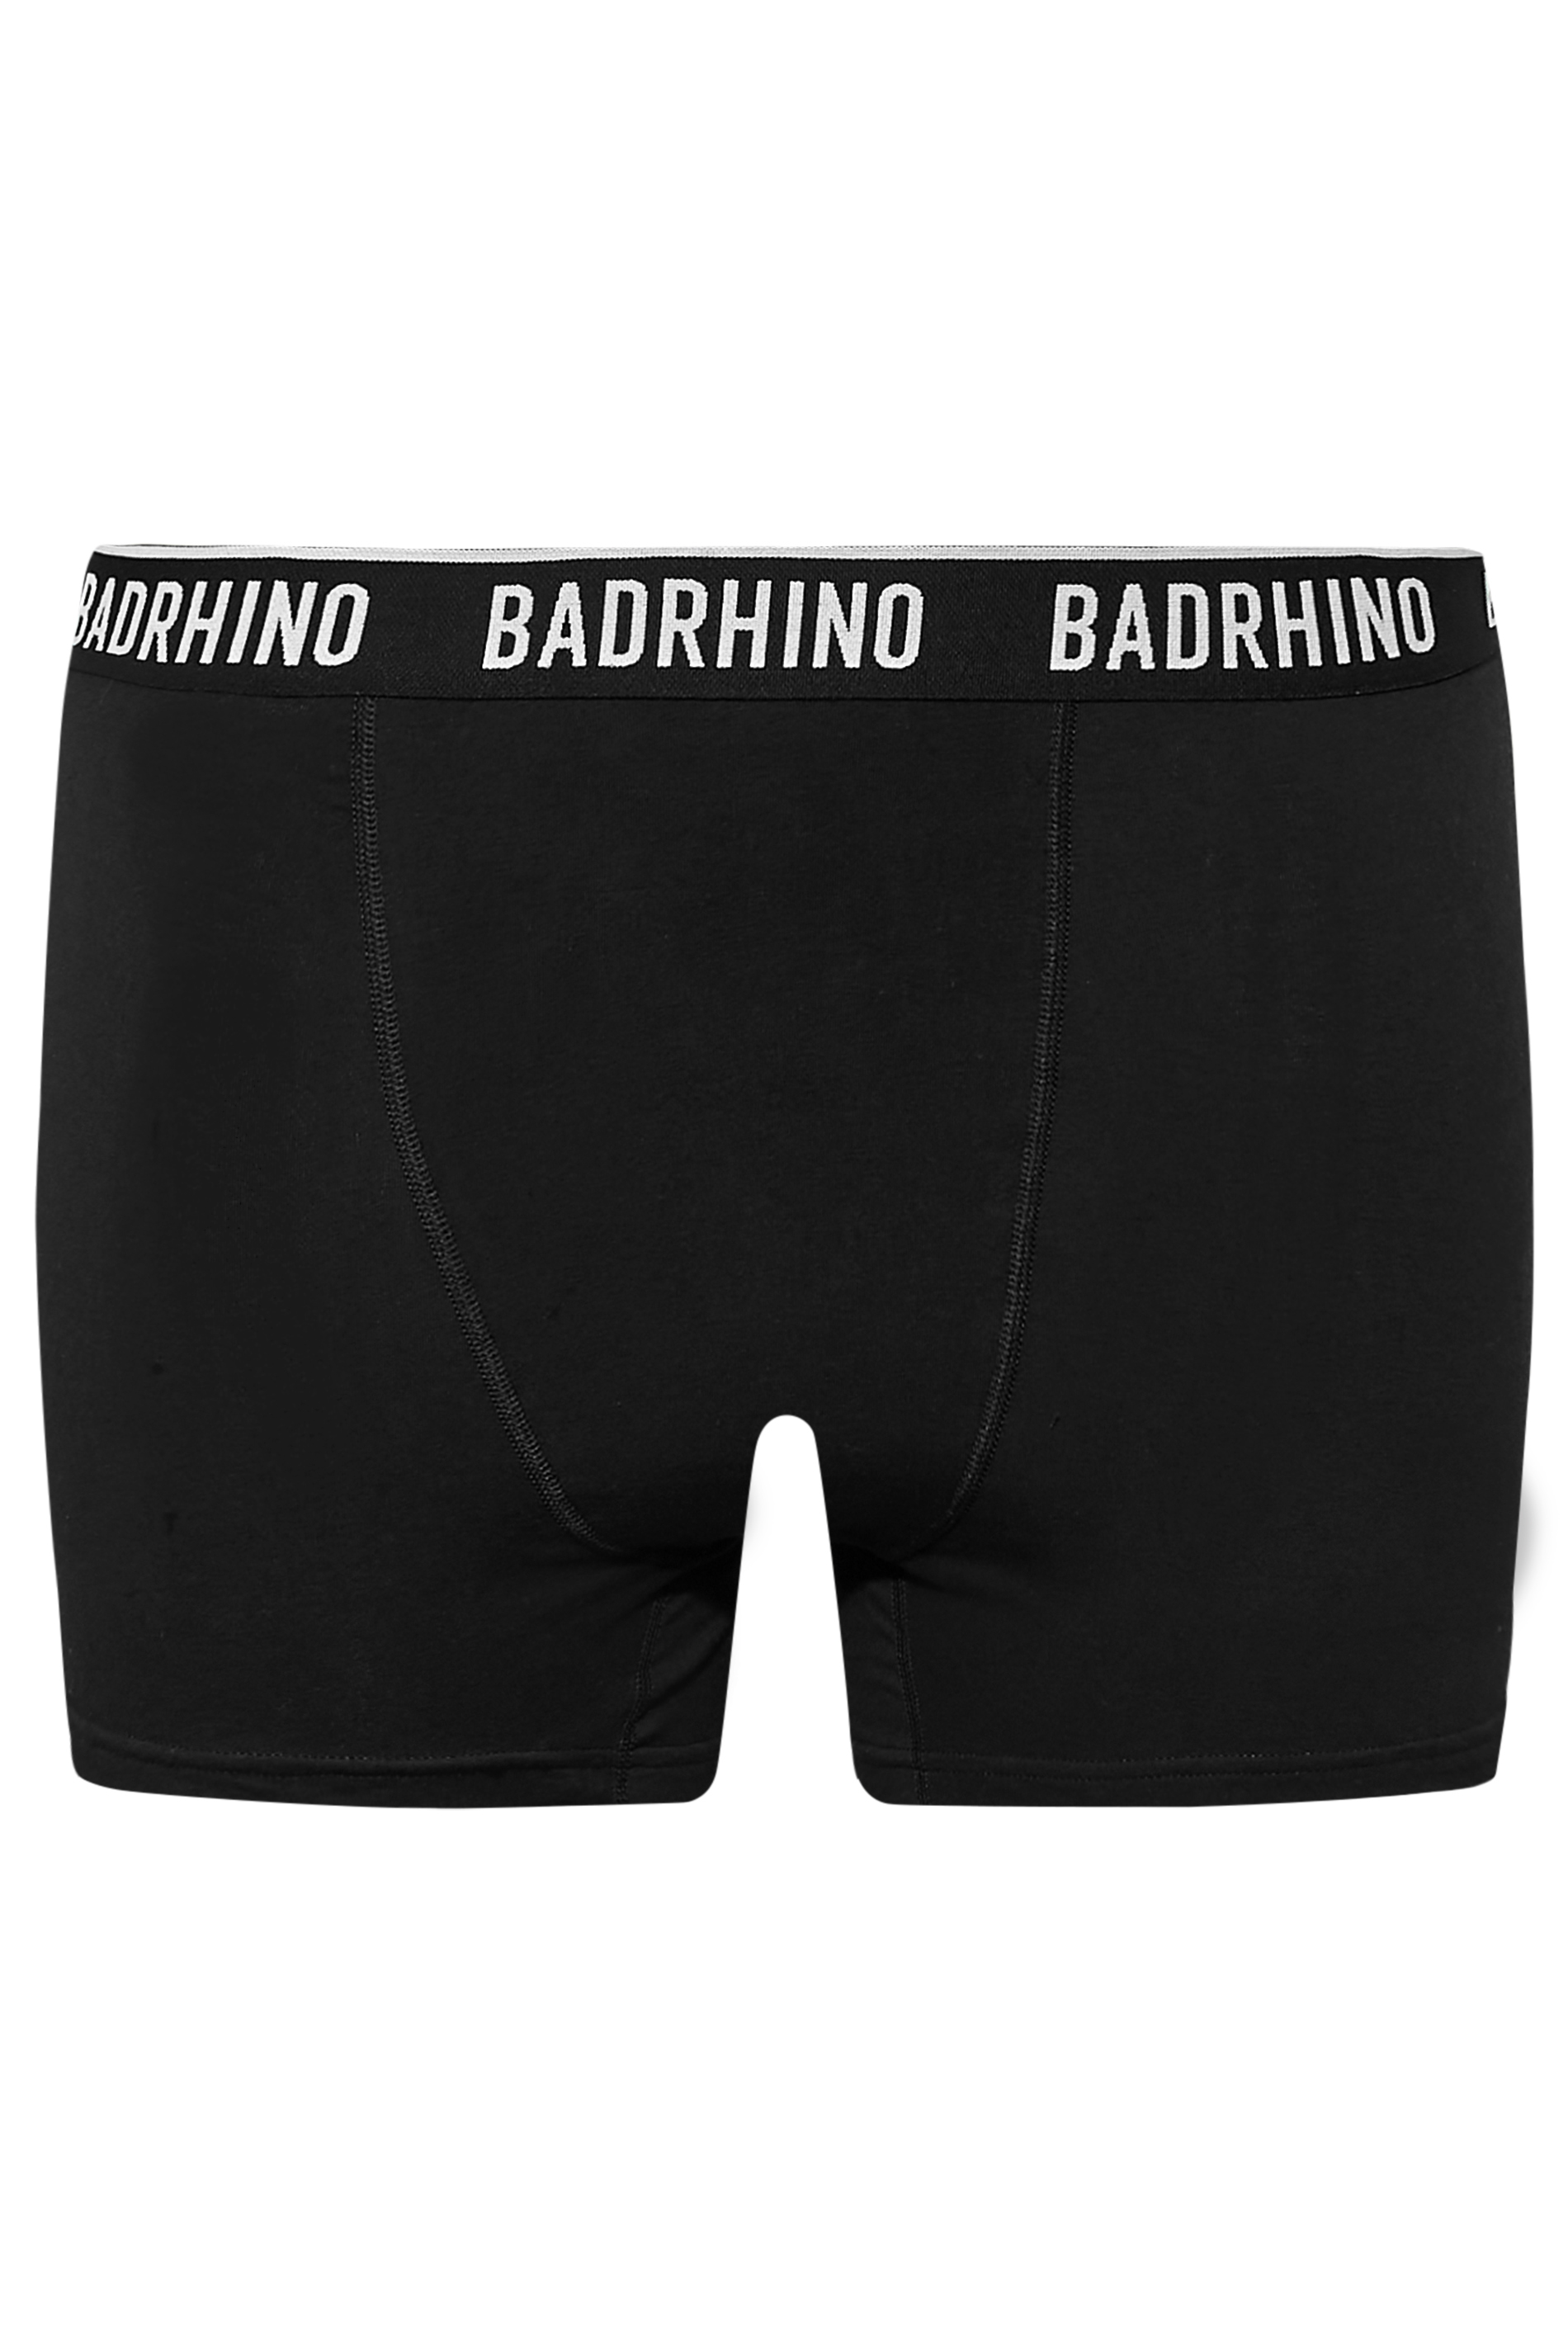 BadRhino Big & Tall 5 PACK Black Boxers | BadRhino